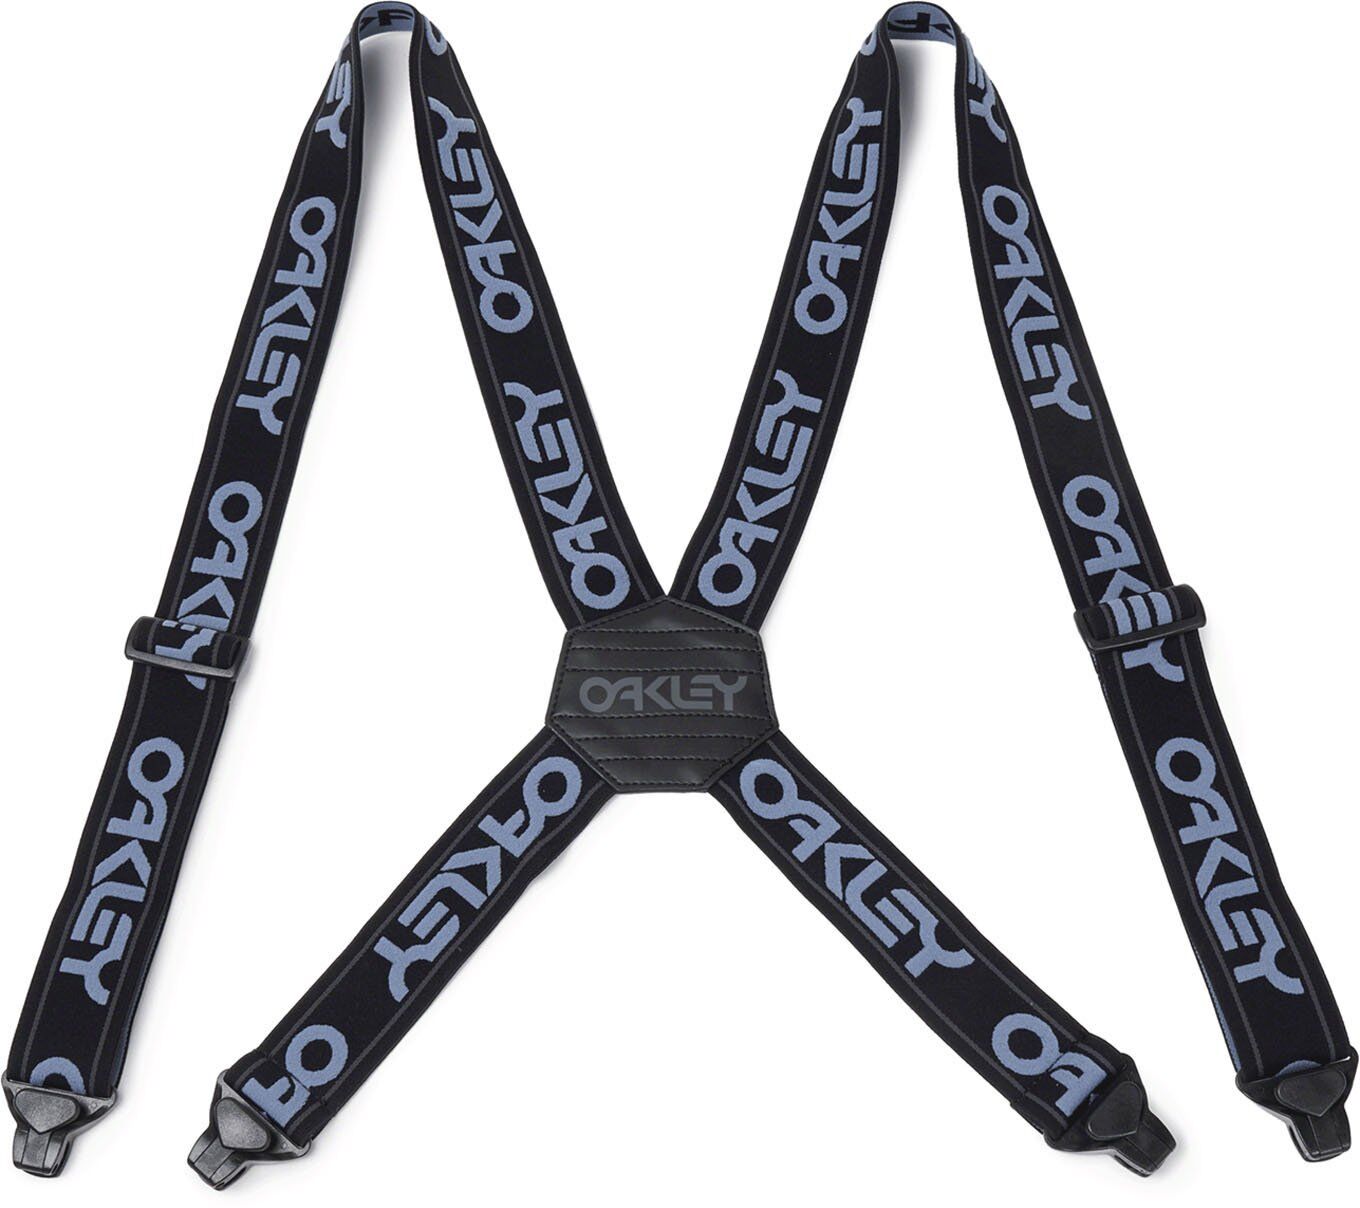 Oakley Factory Suspenders - Szelki narciarskie | Hardloop